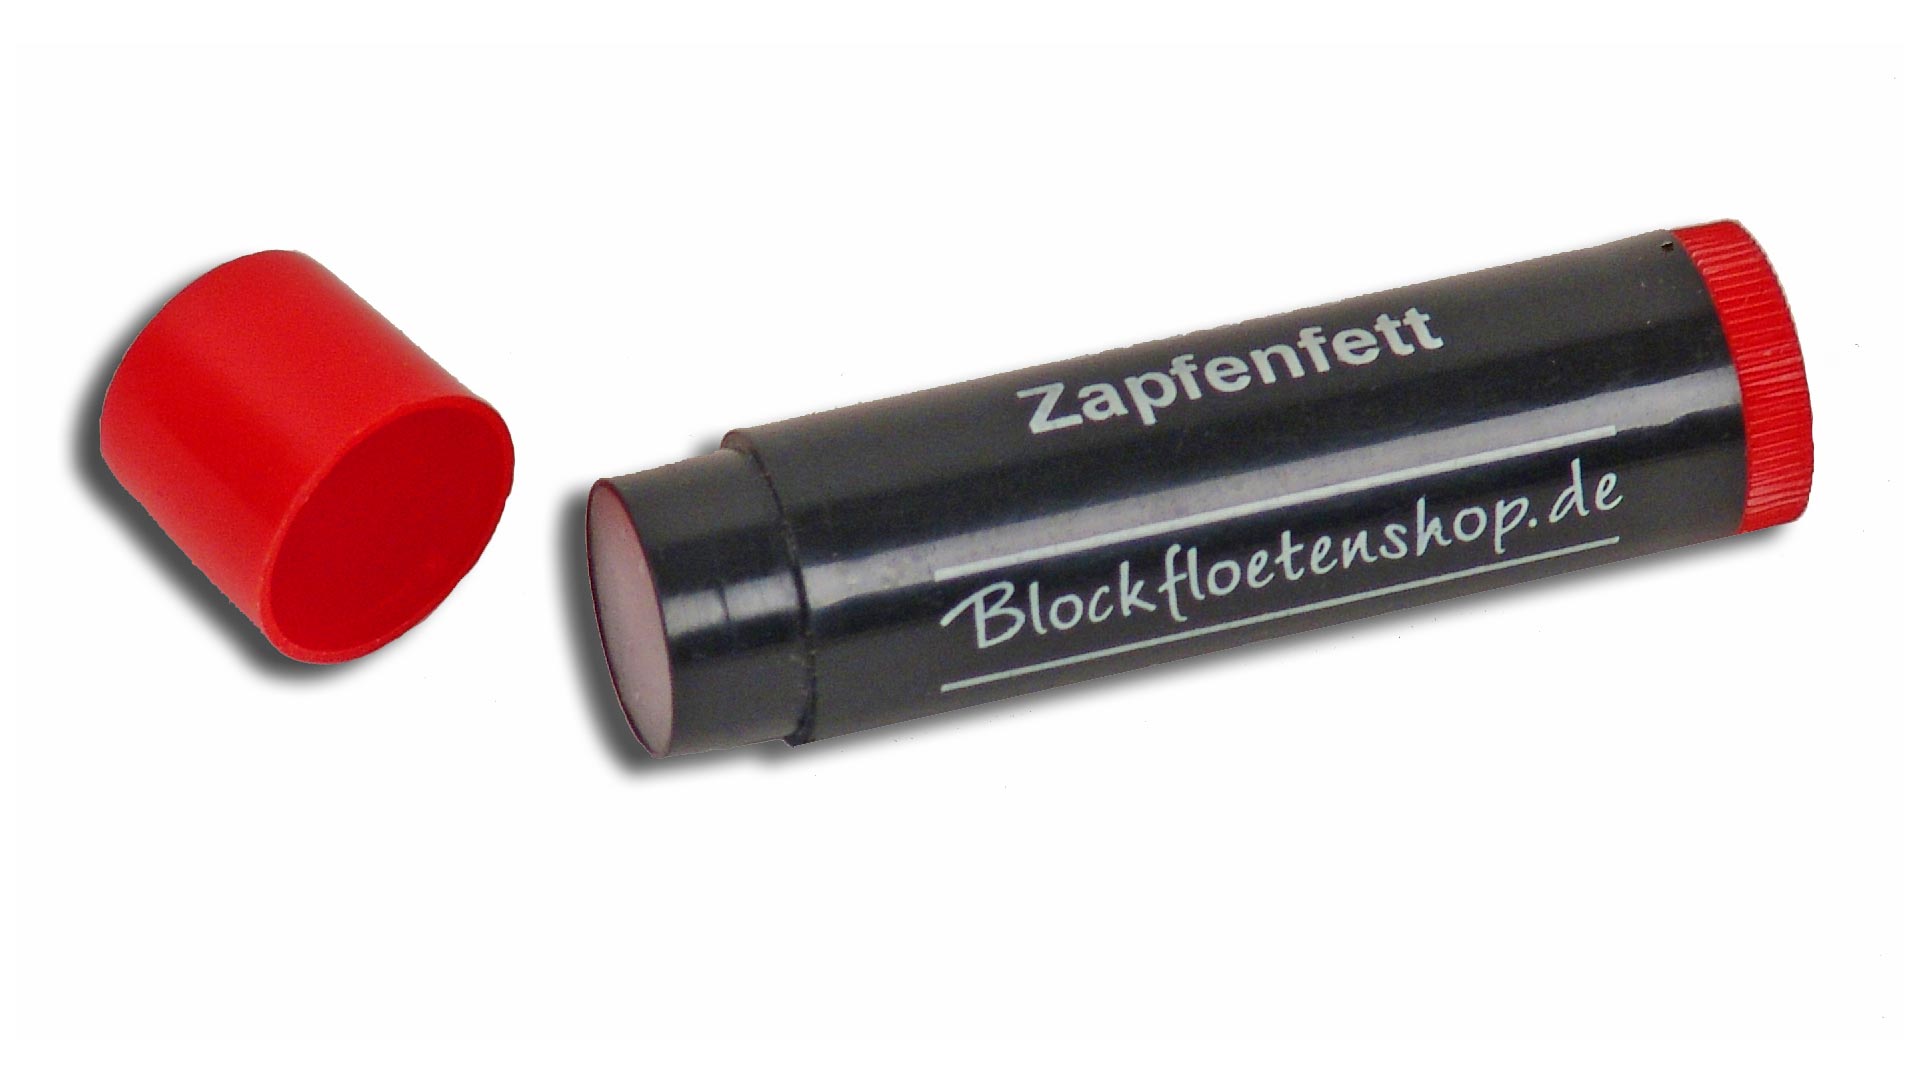 Blockfloetenshop, Zapfenfettstift